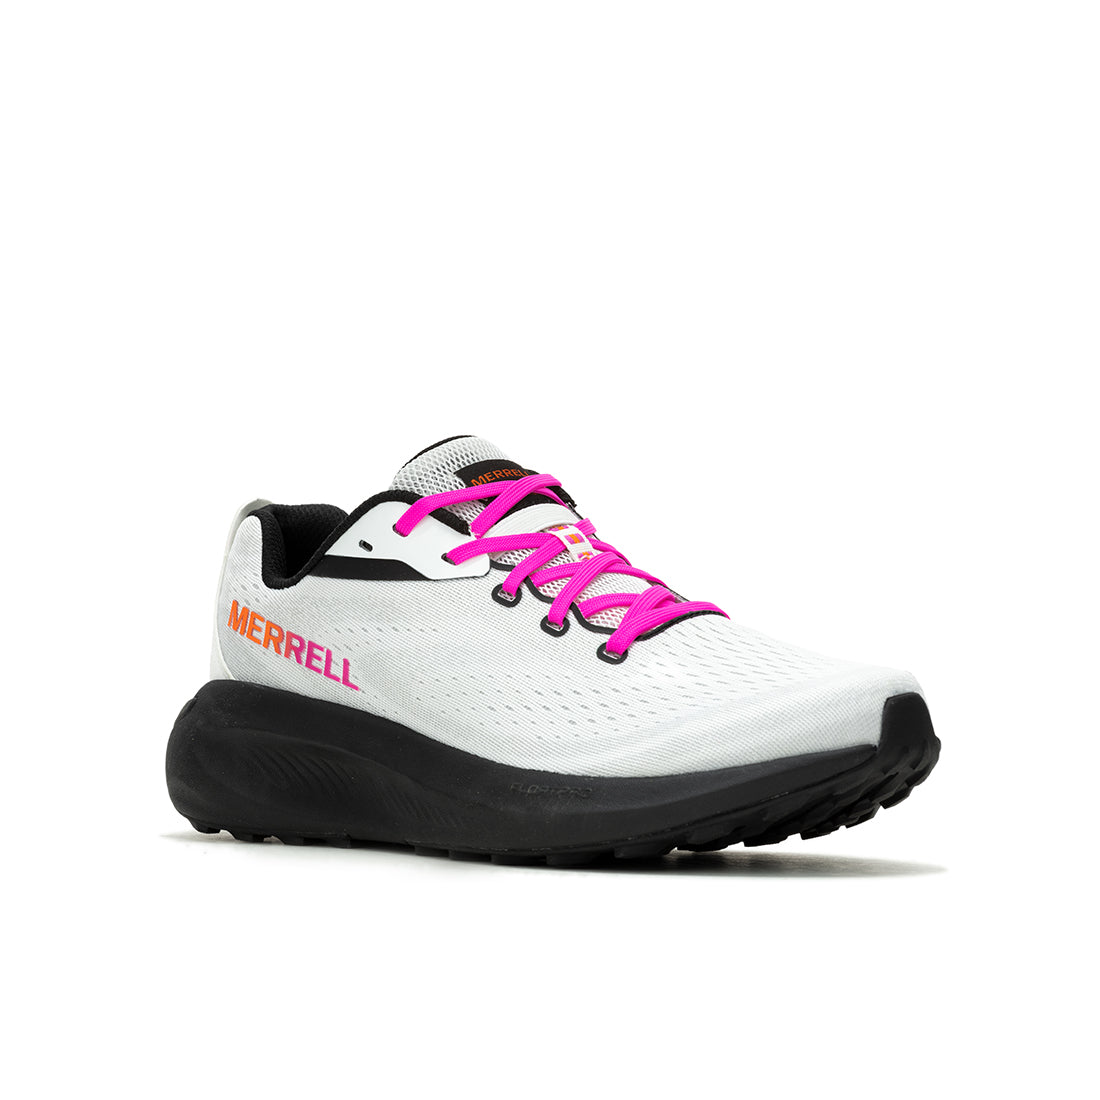 Morphlite - White/Multi Mens Trail Running Shoes - 0